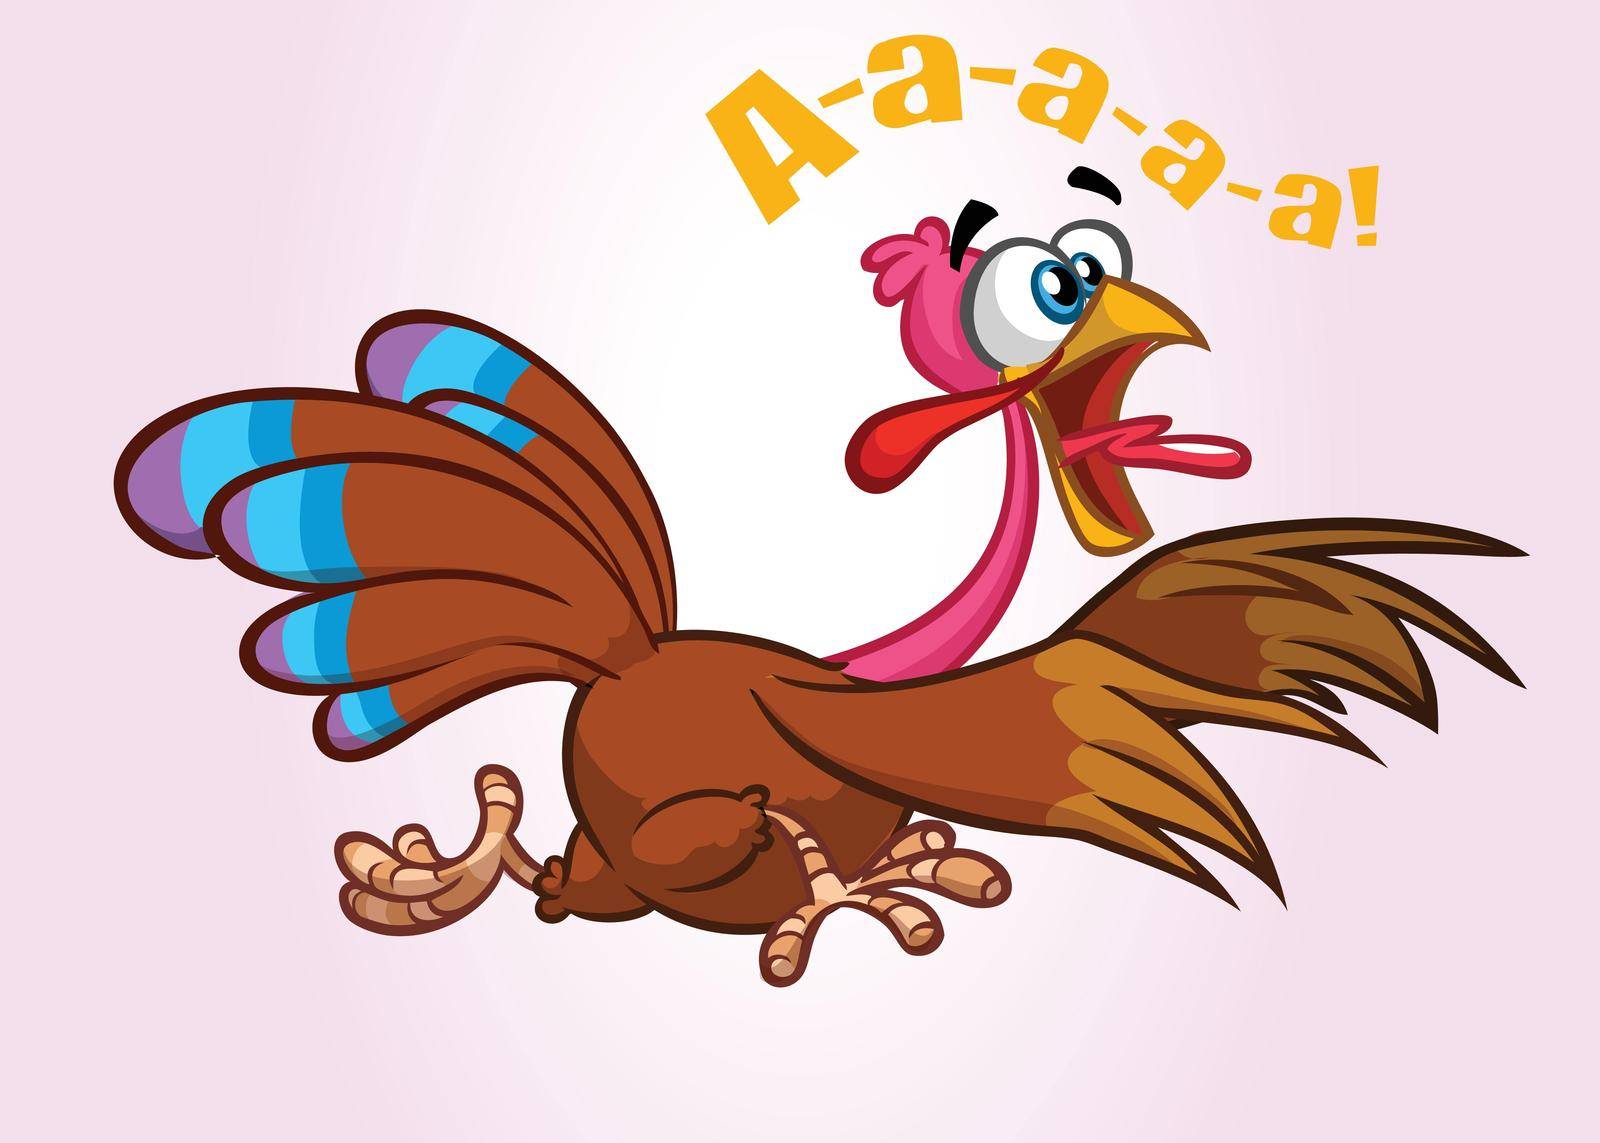 Screaming running cartoon turkey bird character. Vector illustration